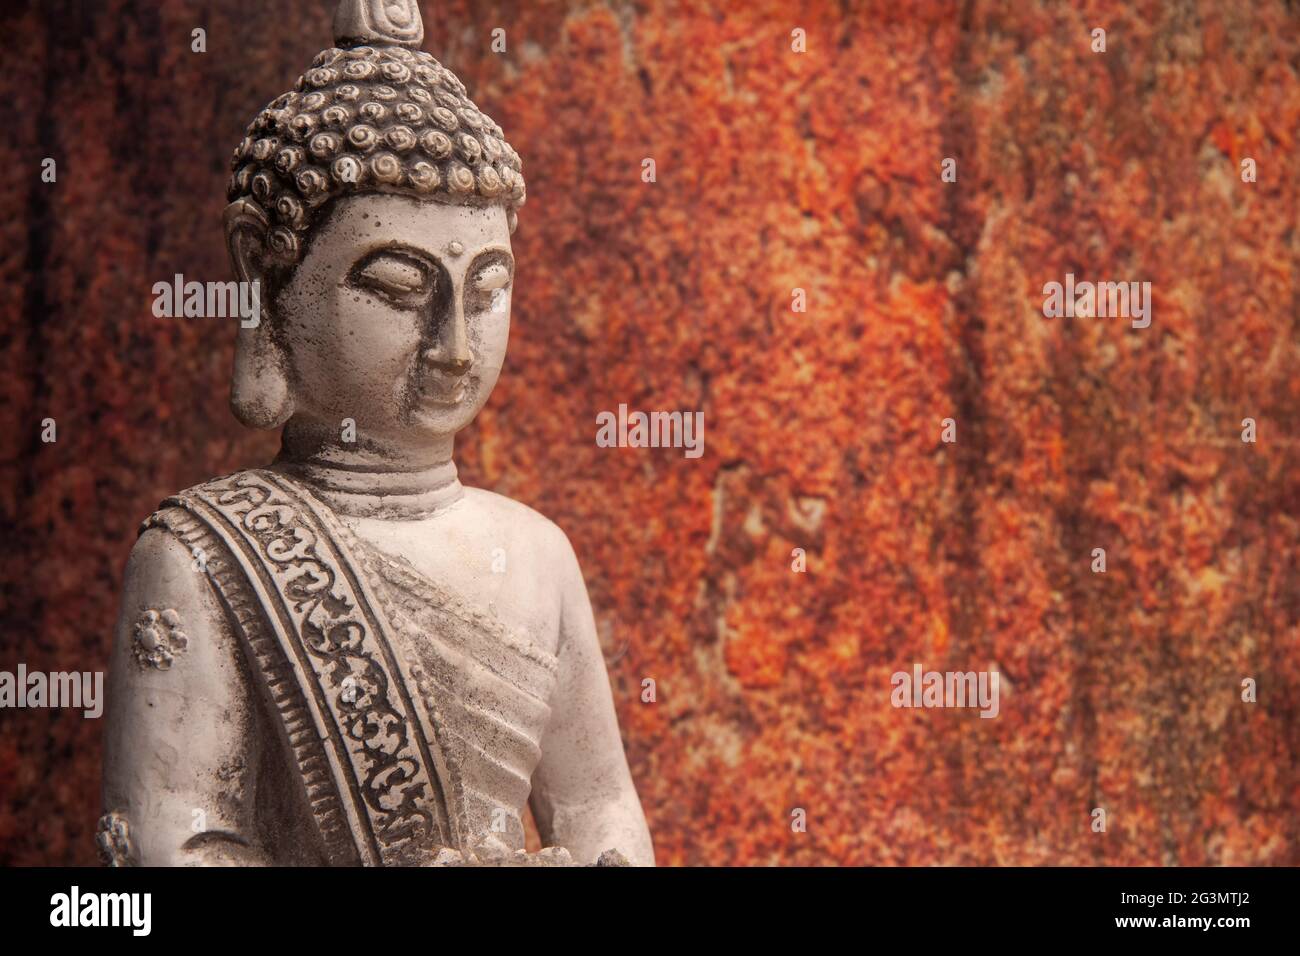 jeune bouddha dans un état de méditation Banque D'Images